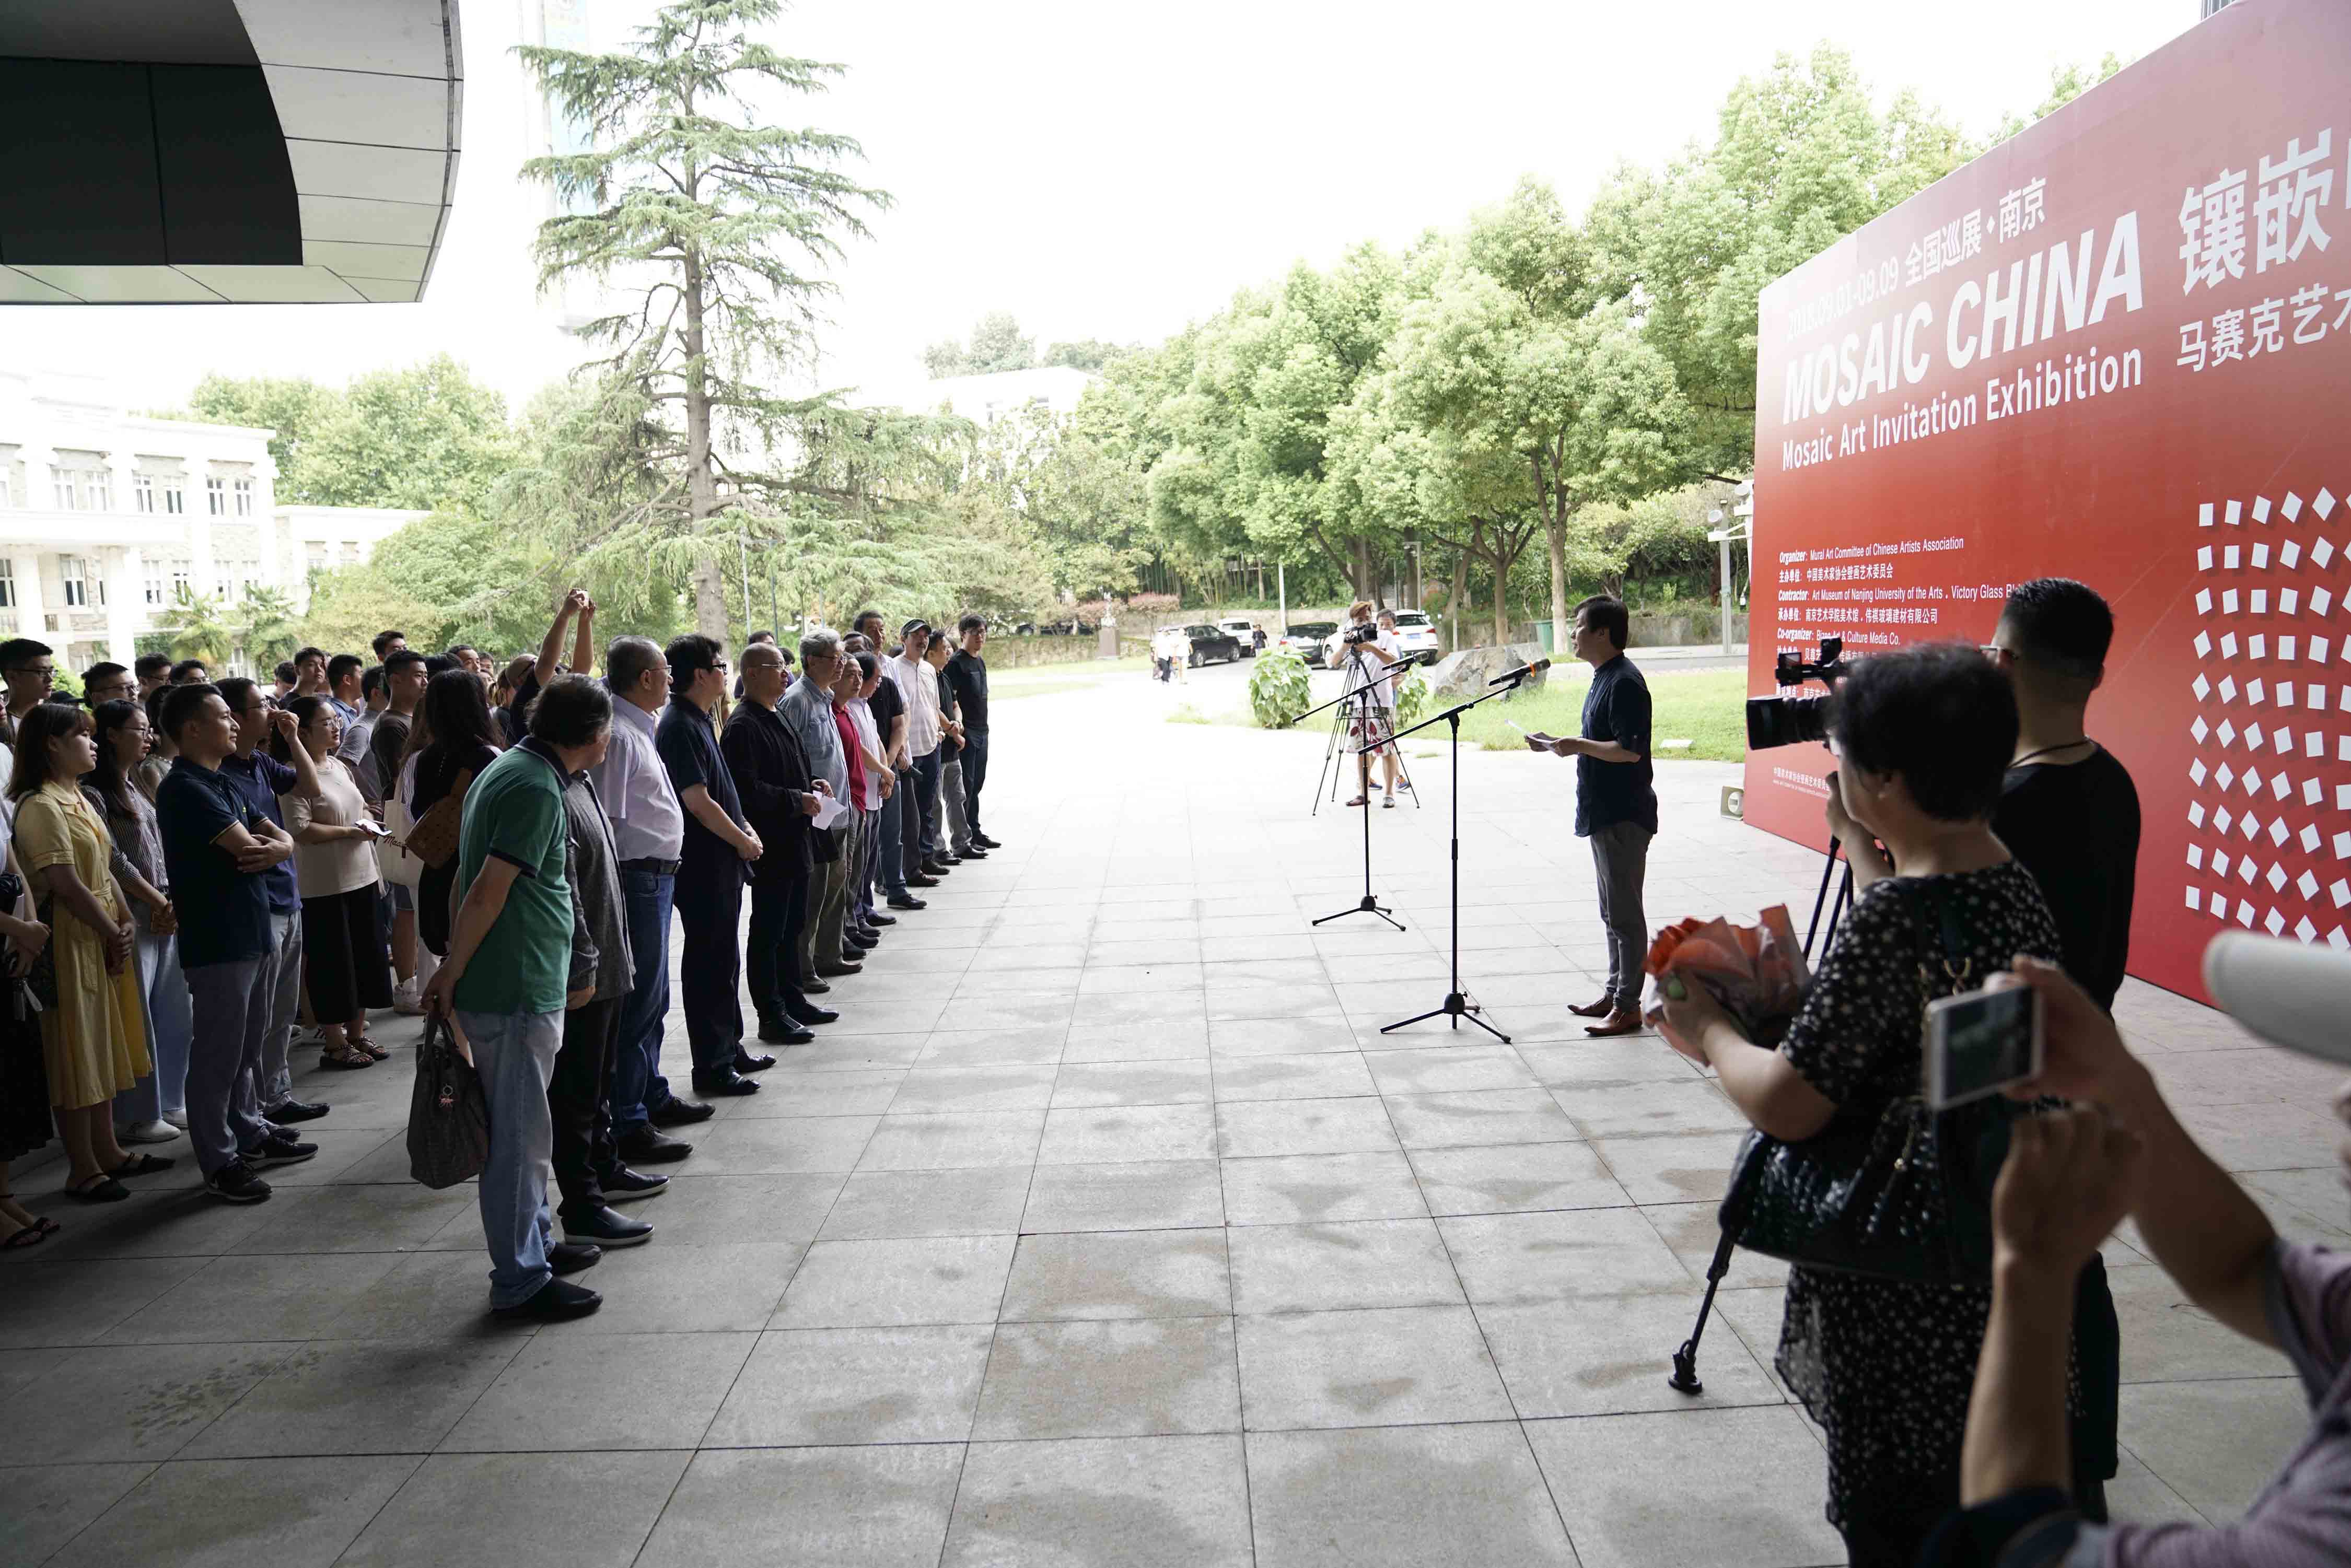 “镶嵌中国——马赛克艺术邀请展全国巡展·南京”在南京艺术学院美术馆开幕